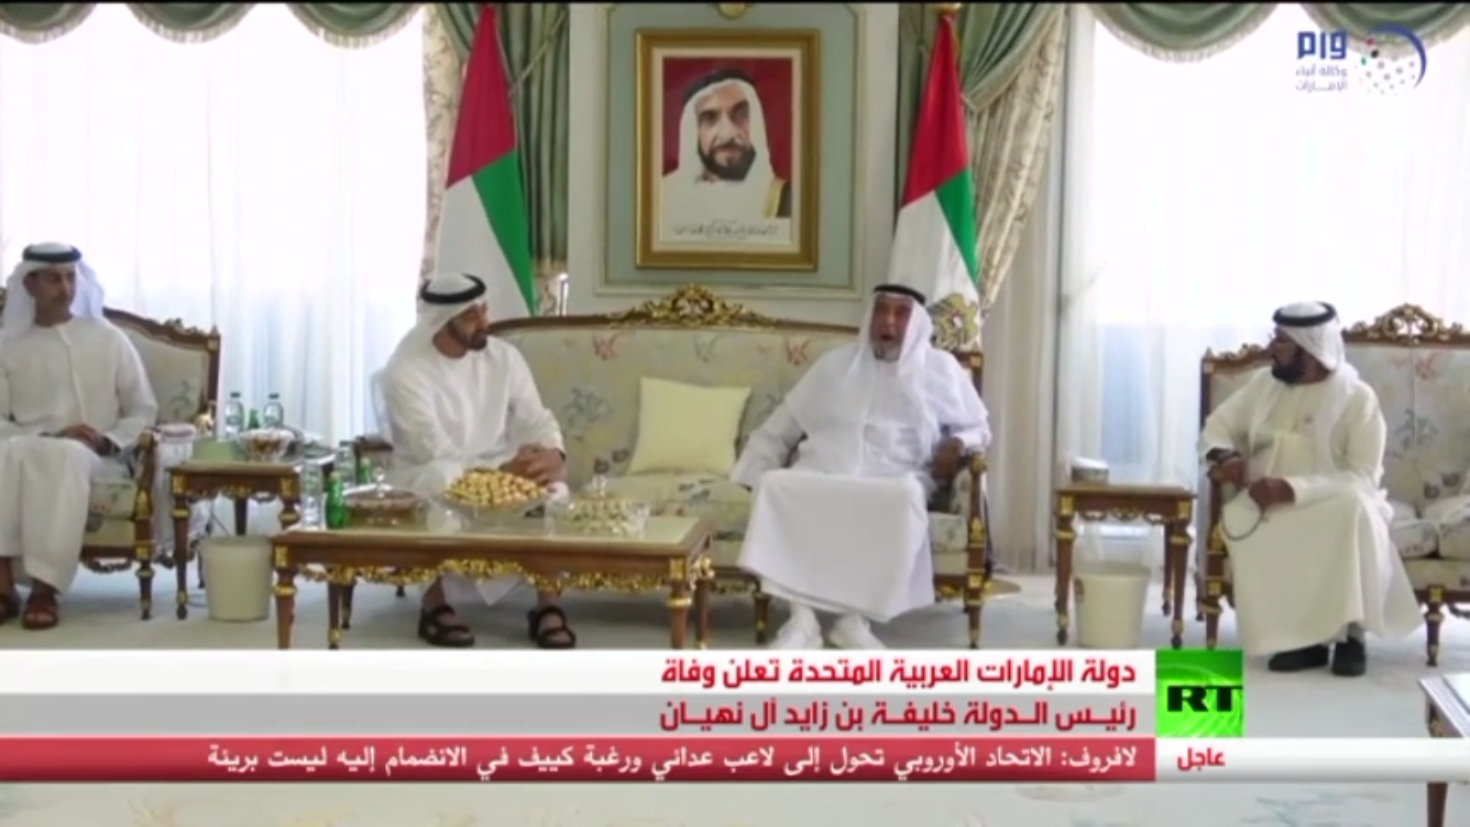 وفاة رئيس دولة الإمارات خليفة بن زايد